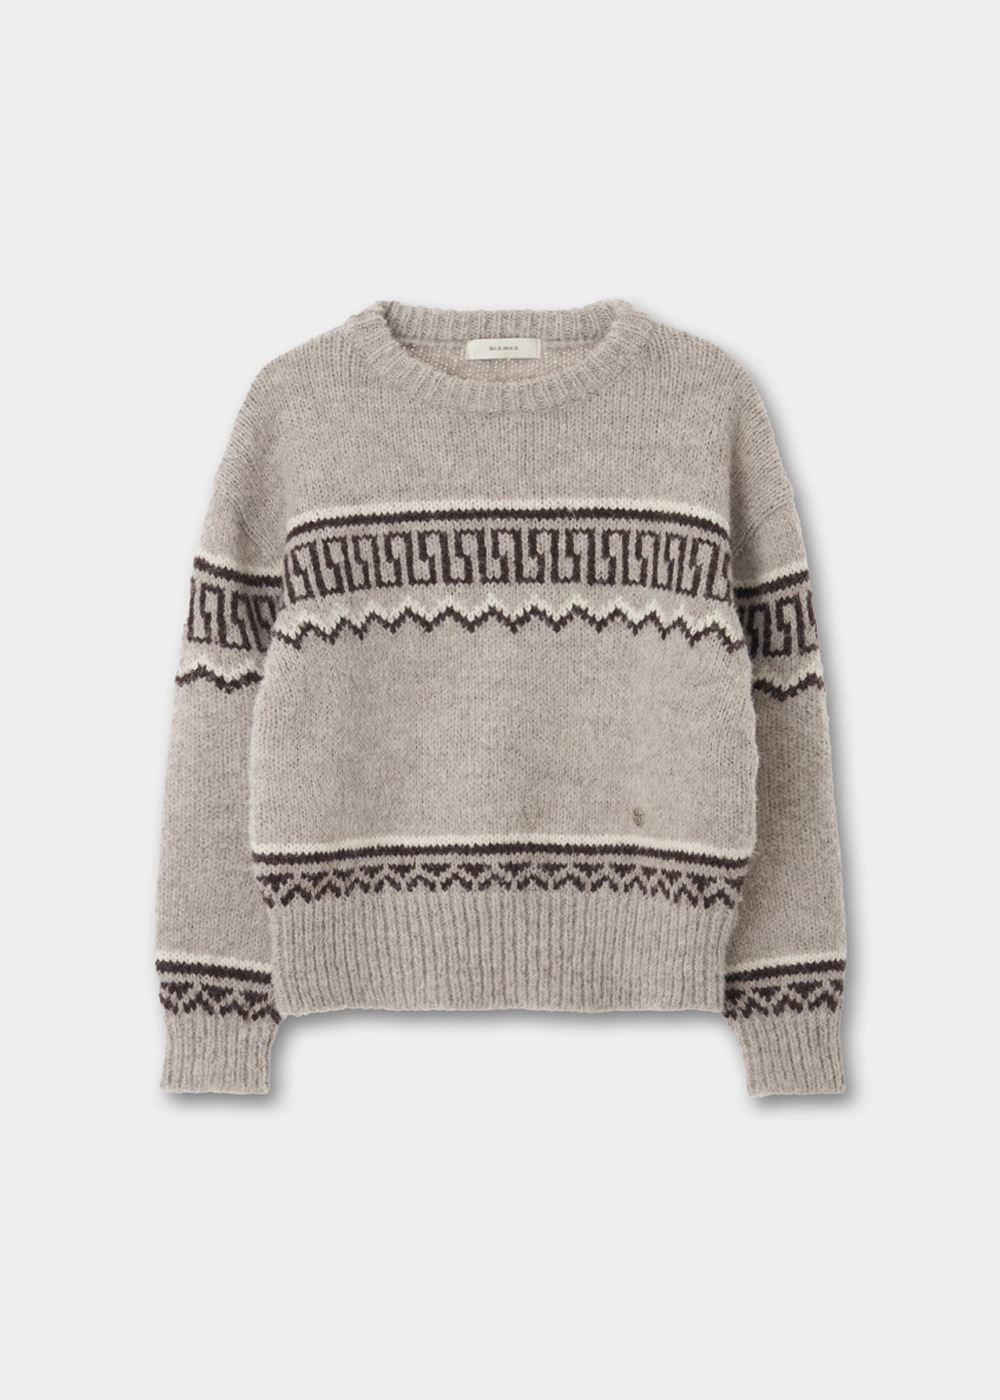 블루브릭,[B급/샘플상품] Pattern knit (oat gray)